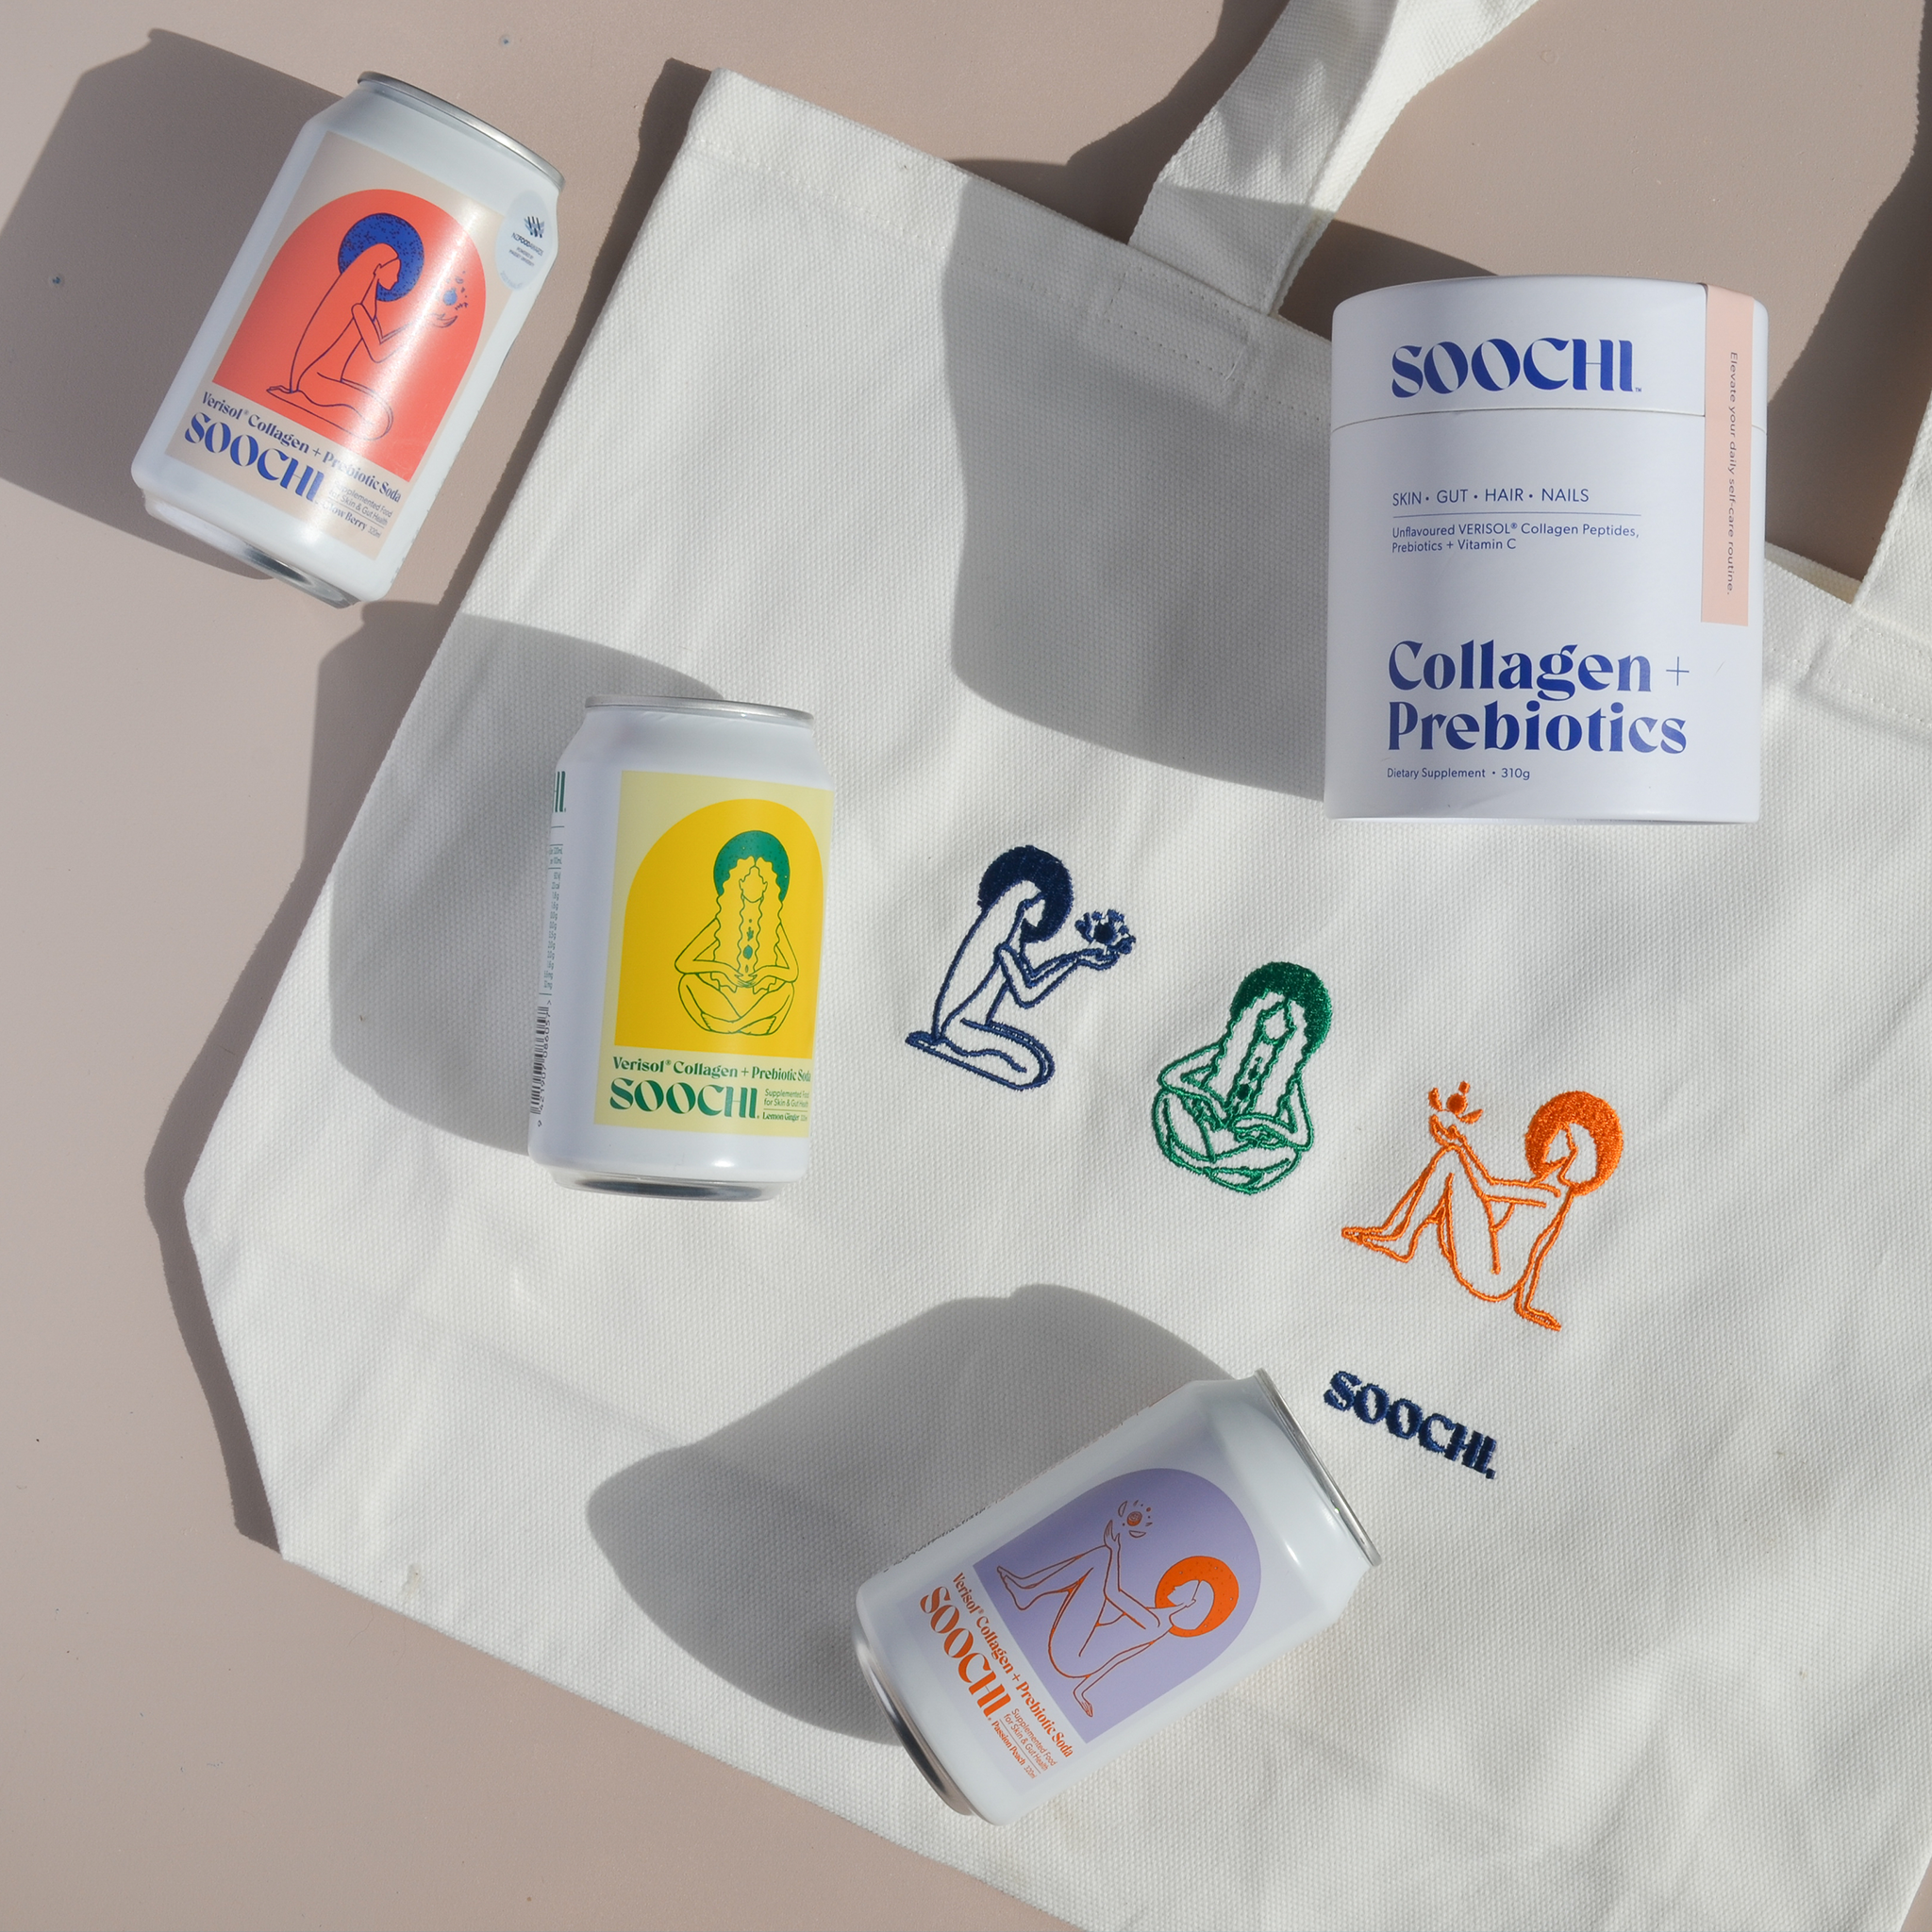 Soochi Collagen + Prebiotic Care Bundle ~ Free Gift